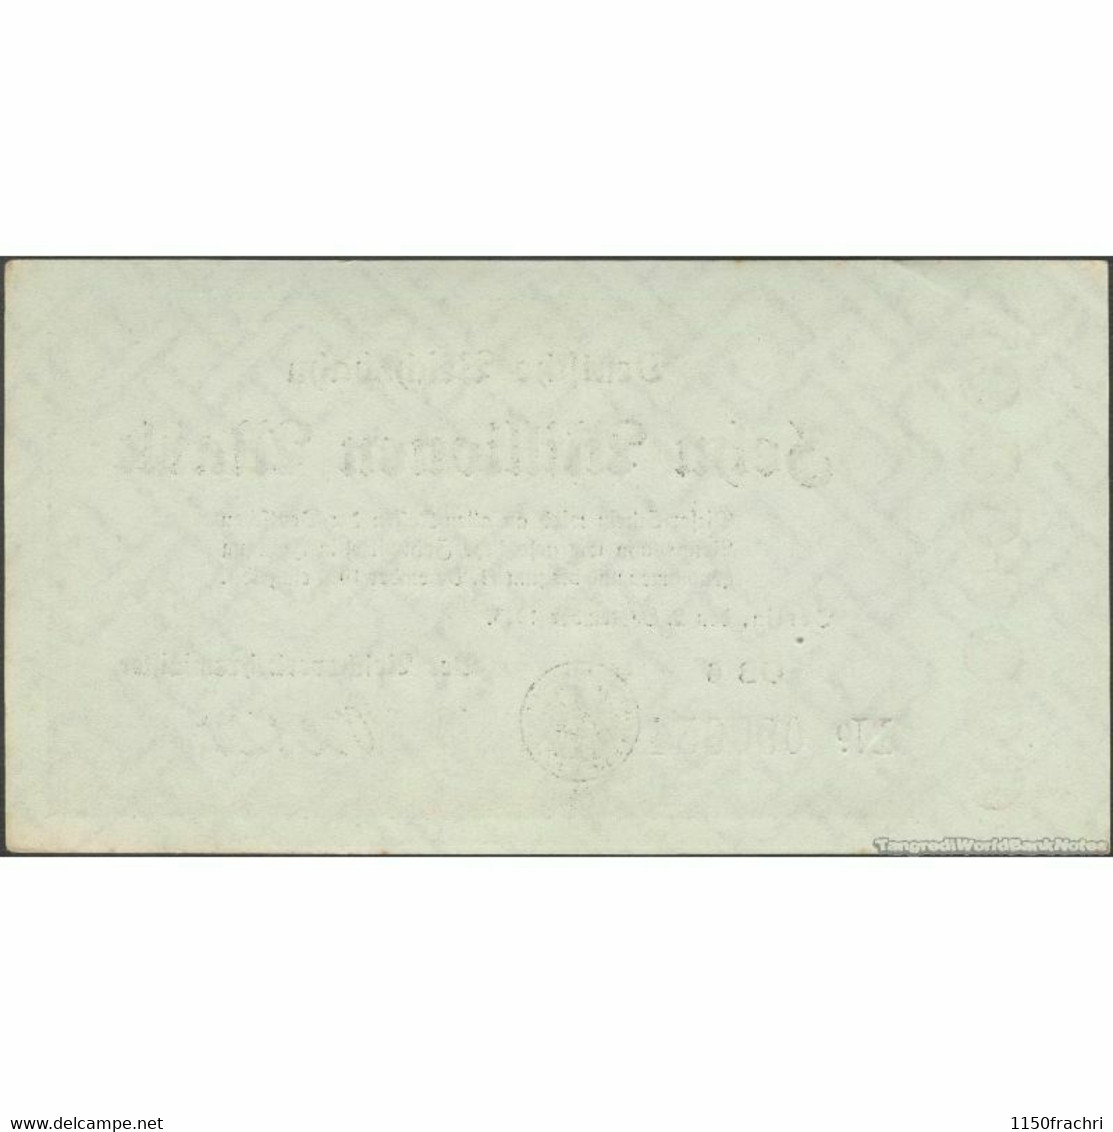 Banknote - Deutsche Reichsbahn 1923 - 10 Millionen Mark - 10 Mio. Mark